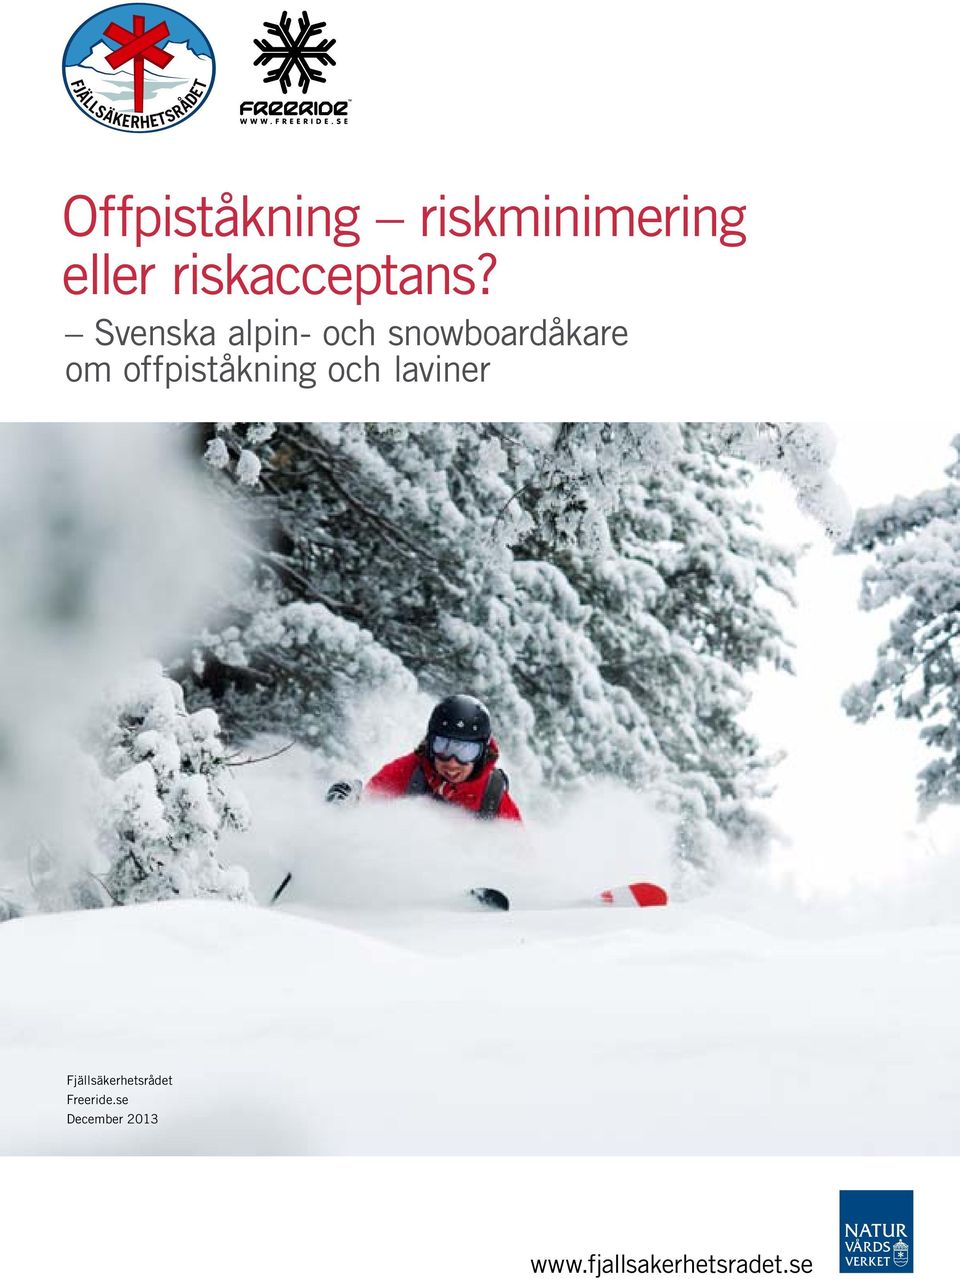 Svenska alpin- och snowboardåkare om offpiståkning